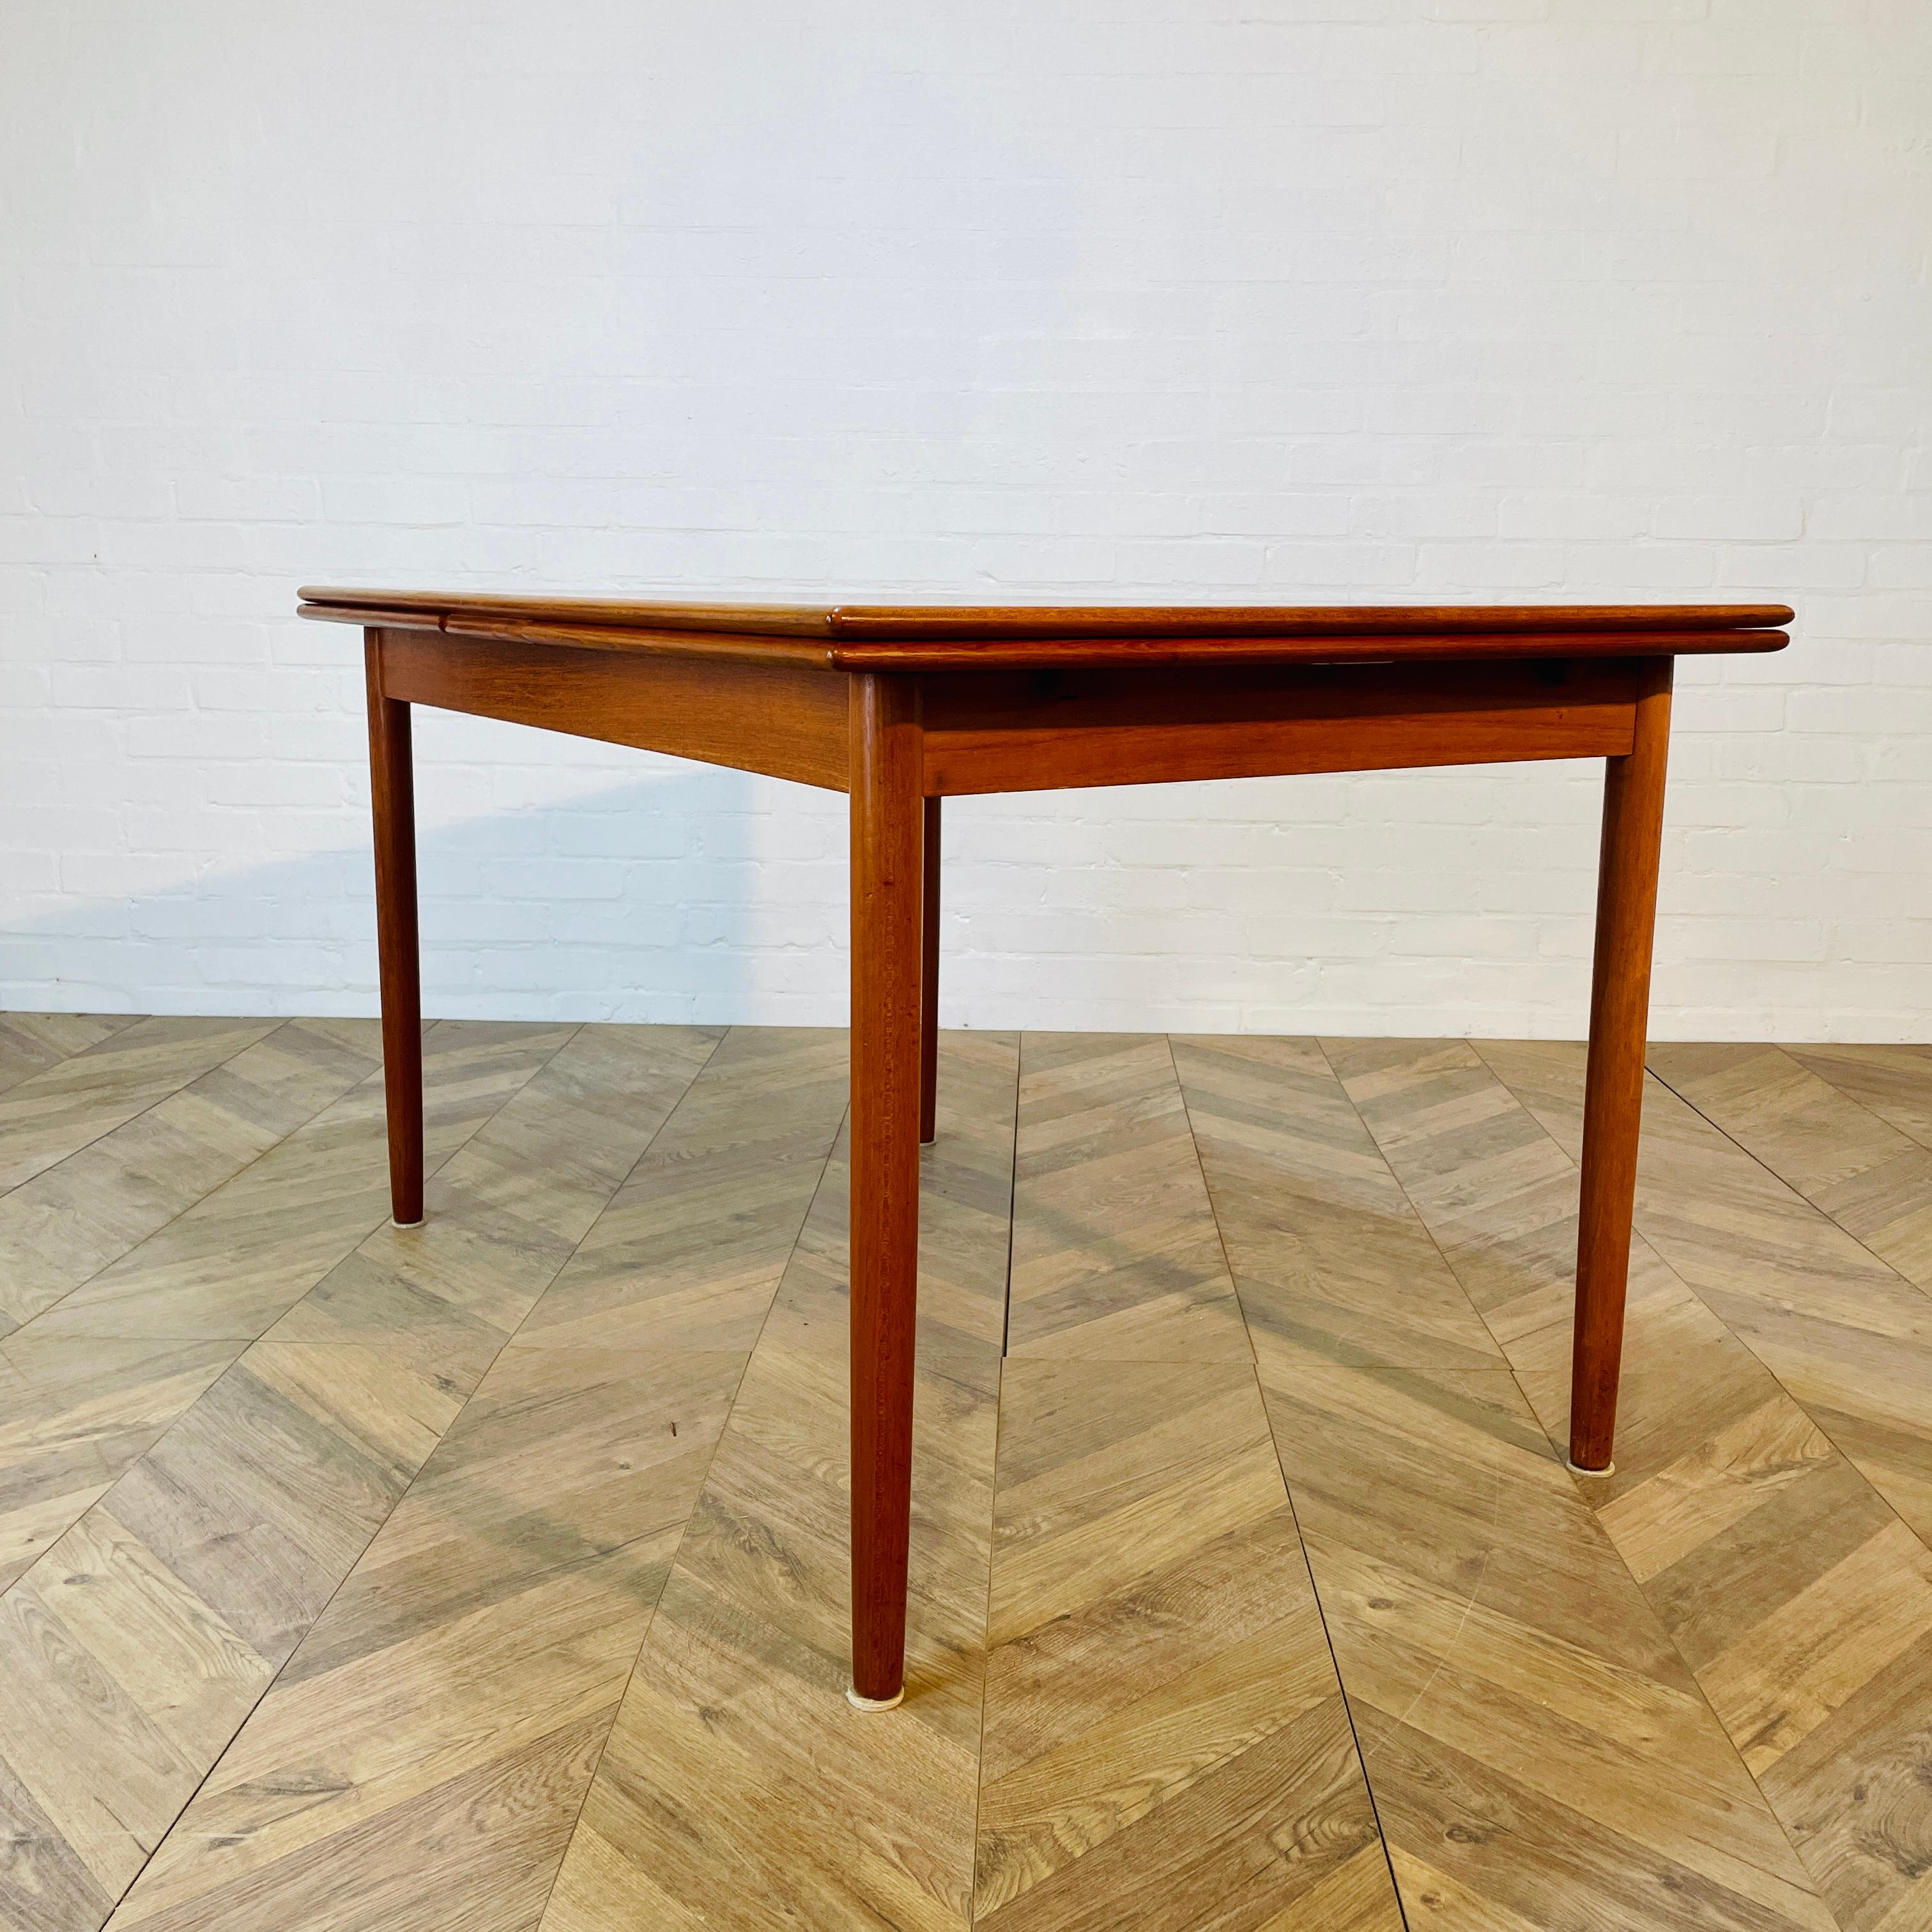 Table de salle à manger à rallonge vintage du milieu du siècle, conçue par K.A. Jorgensen pour A/S Mobelfabrik, 1974.

Une table magnifiquement conçue, avec des feuilles extensibles, qui sont dissimulées sous le plateau. Avec un bord en forme de